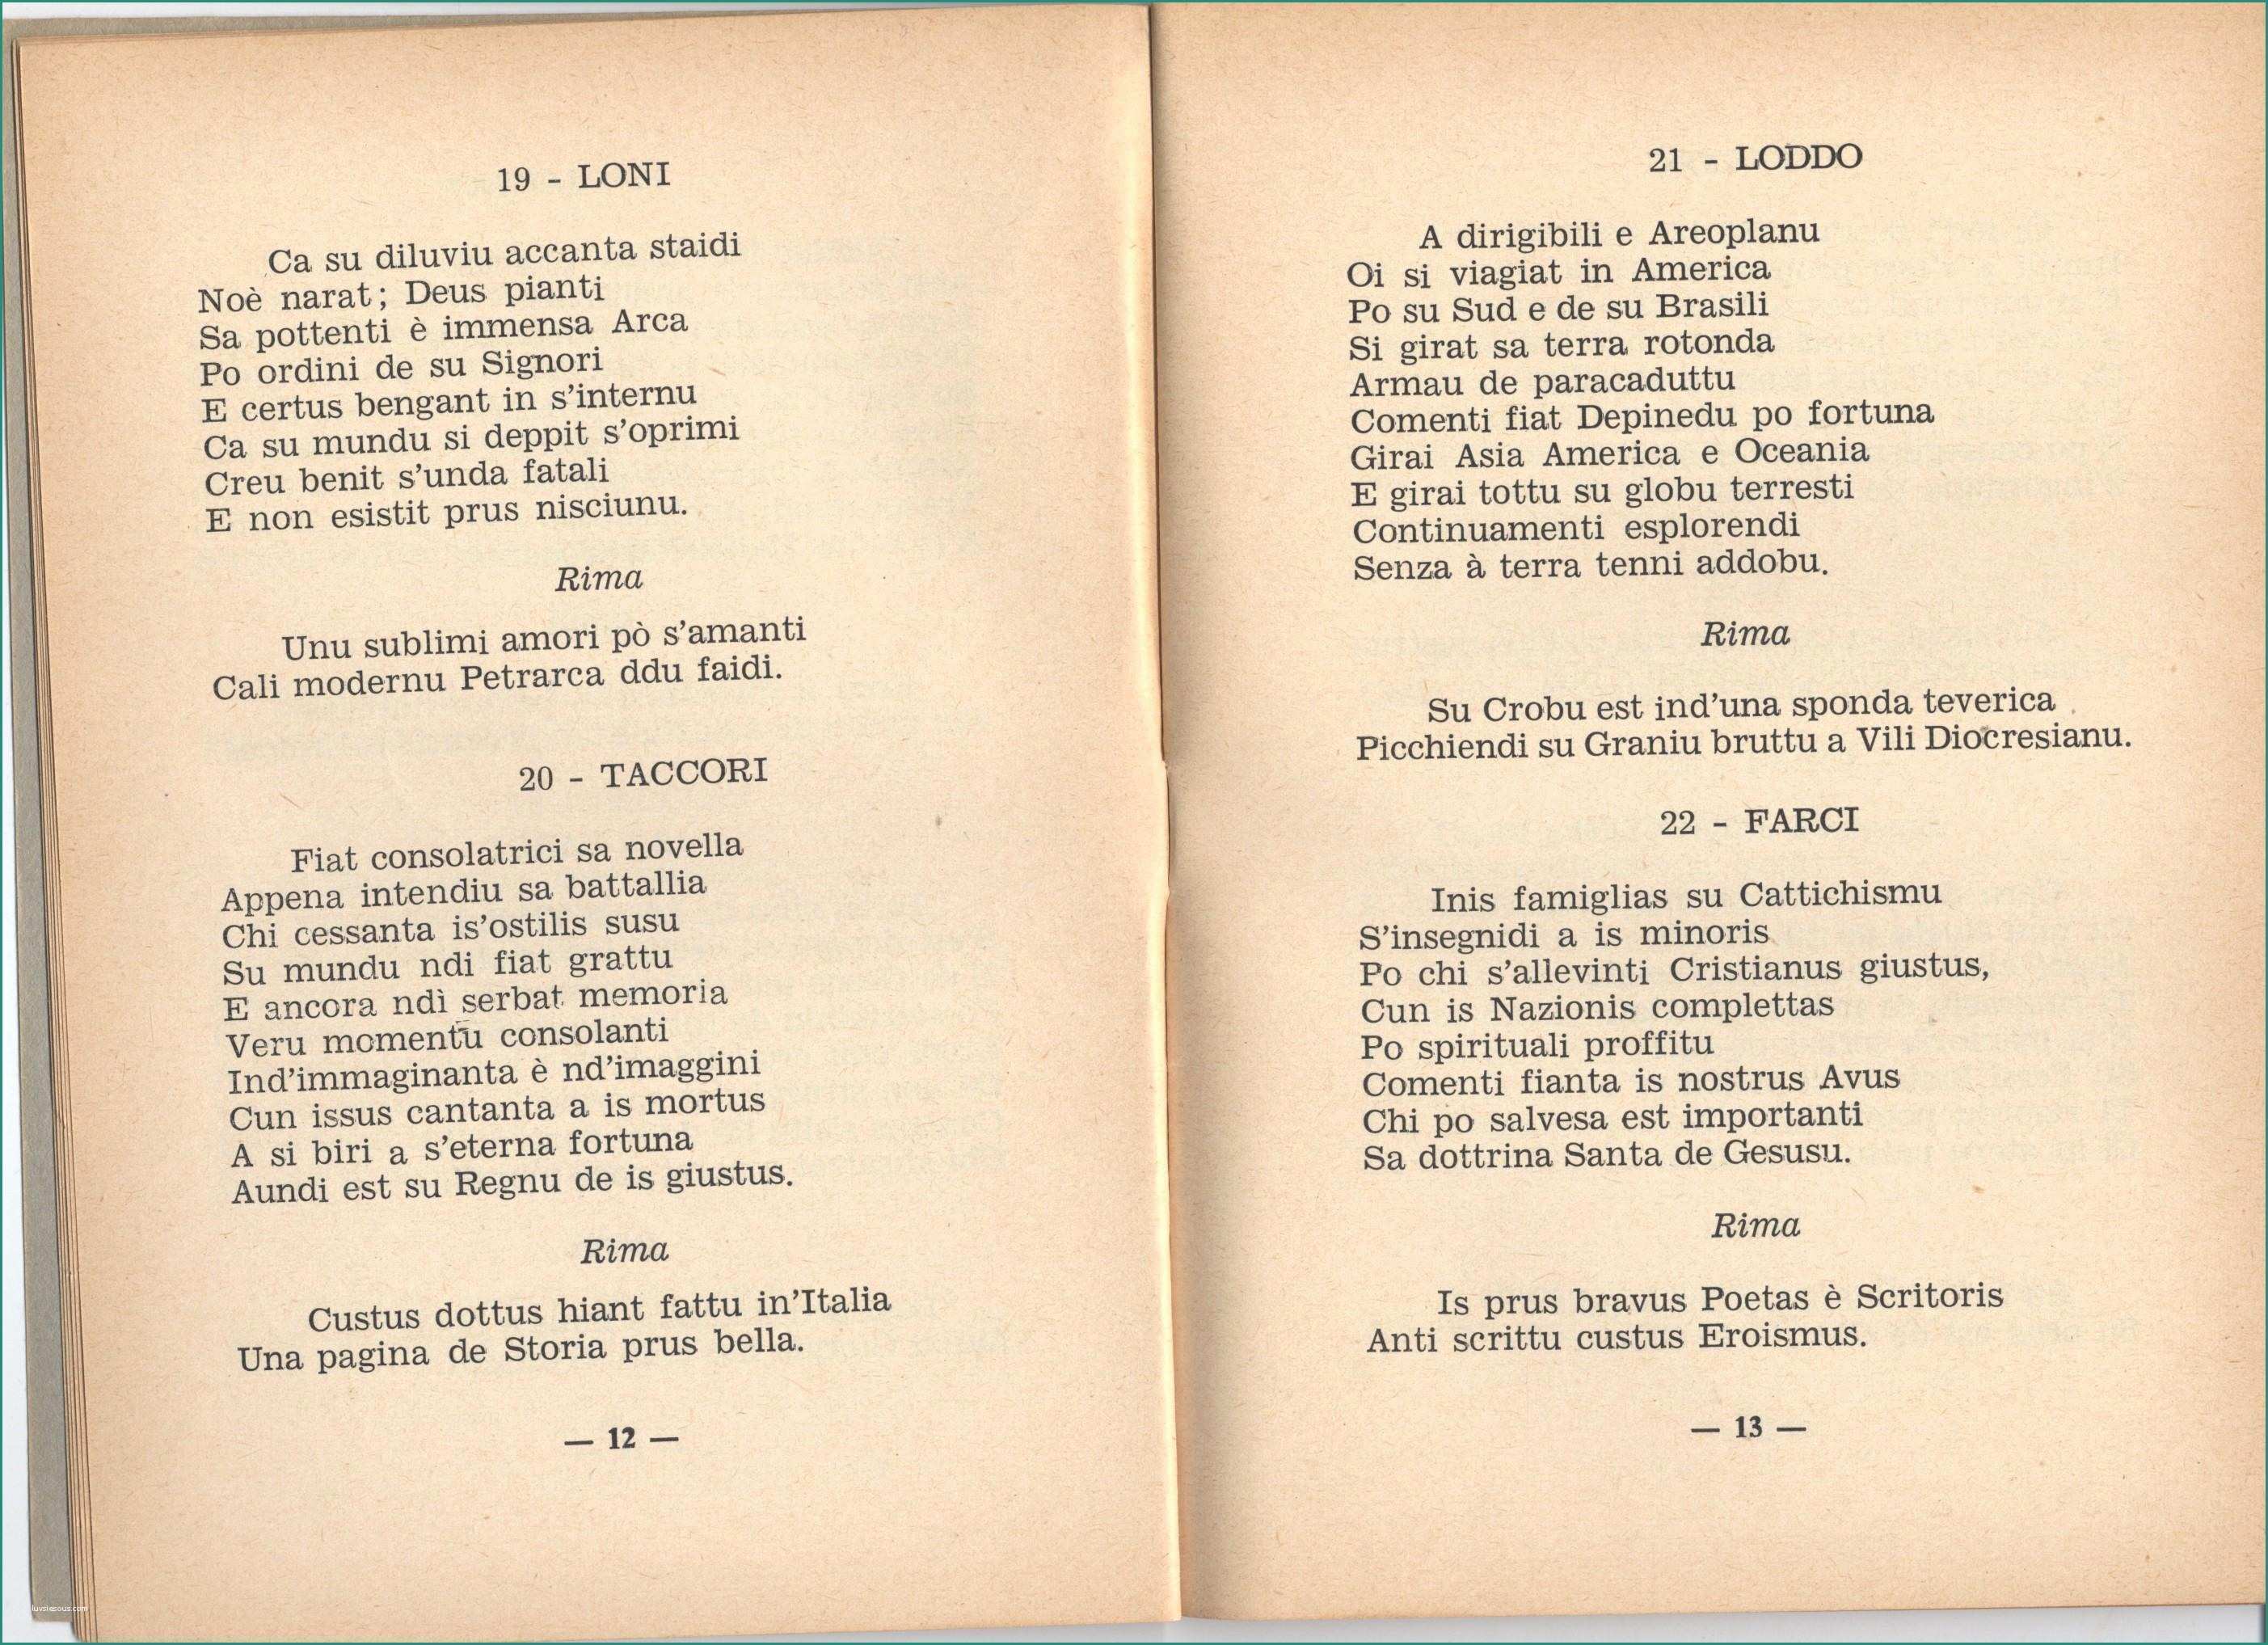 Poesia Sulla Primavera In Rima E Storia E Folclore Sardo